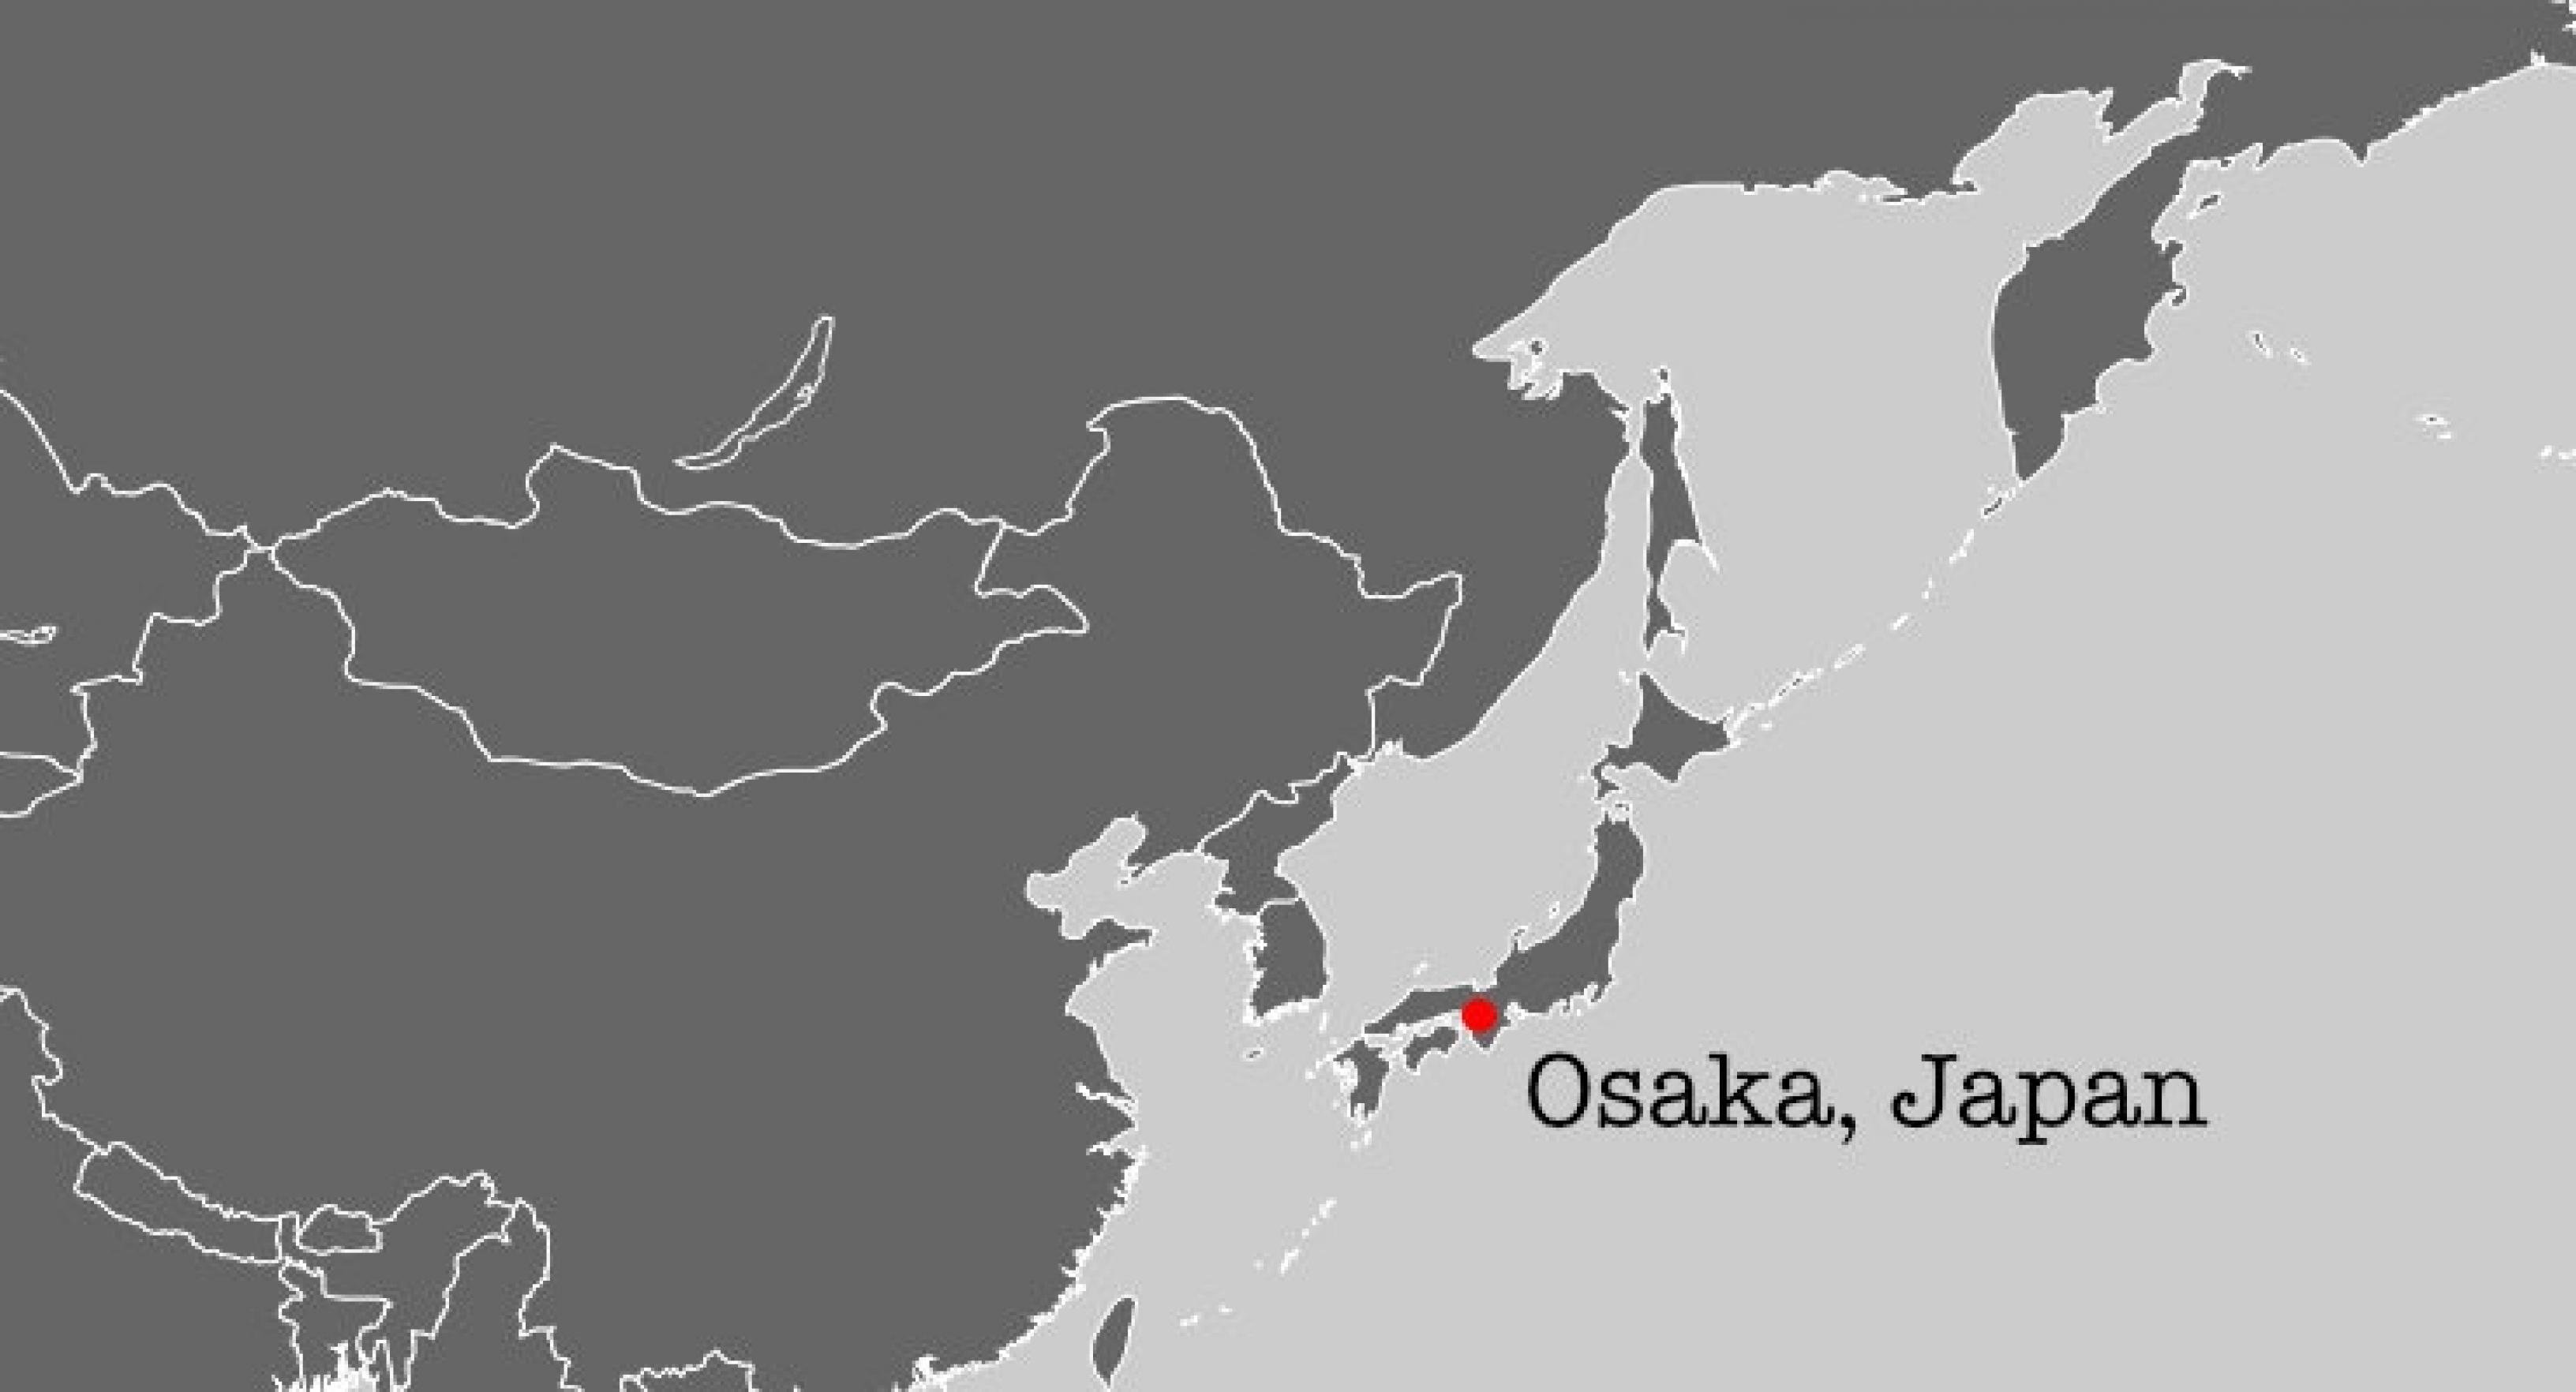 Auf einer grauen Karte liegt rot markiert Osaka, dem Forschungsort von Yoshizumi Ishino, dem Entdecker der ersten CRISPR-Sequenz.